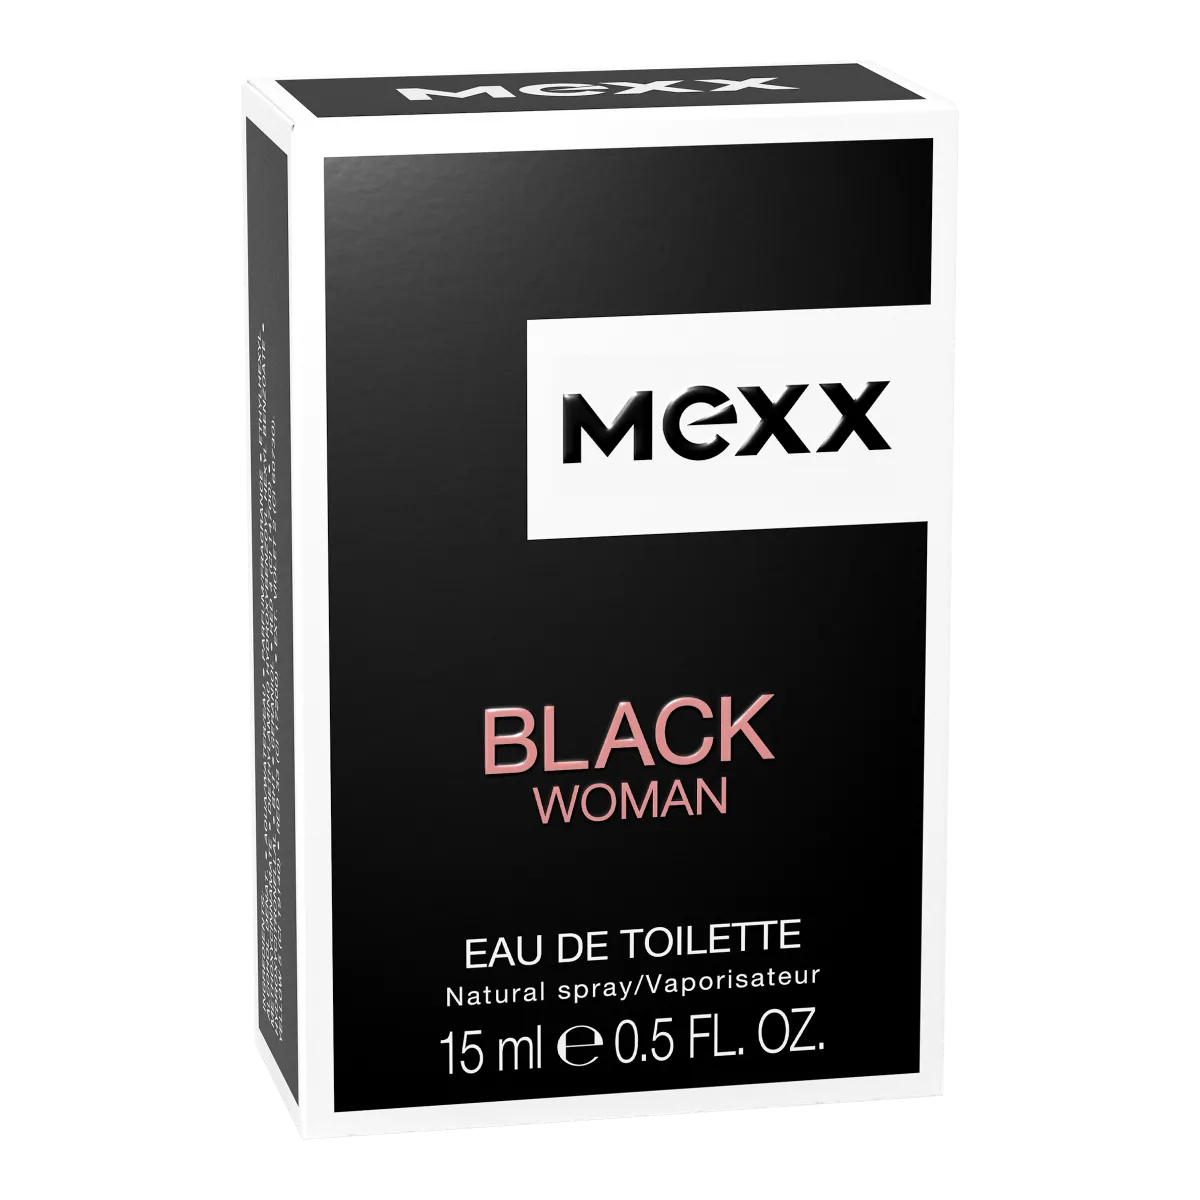 Mexx Black Woman woda toaletowa, 15 ml 